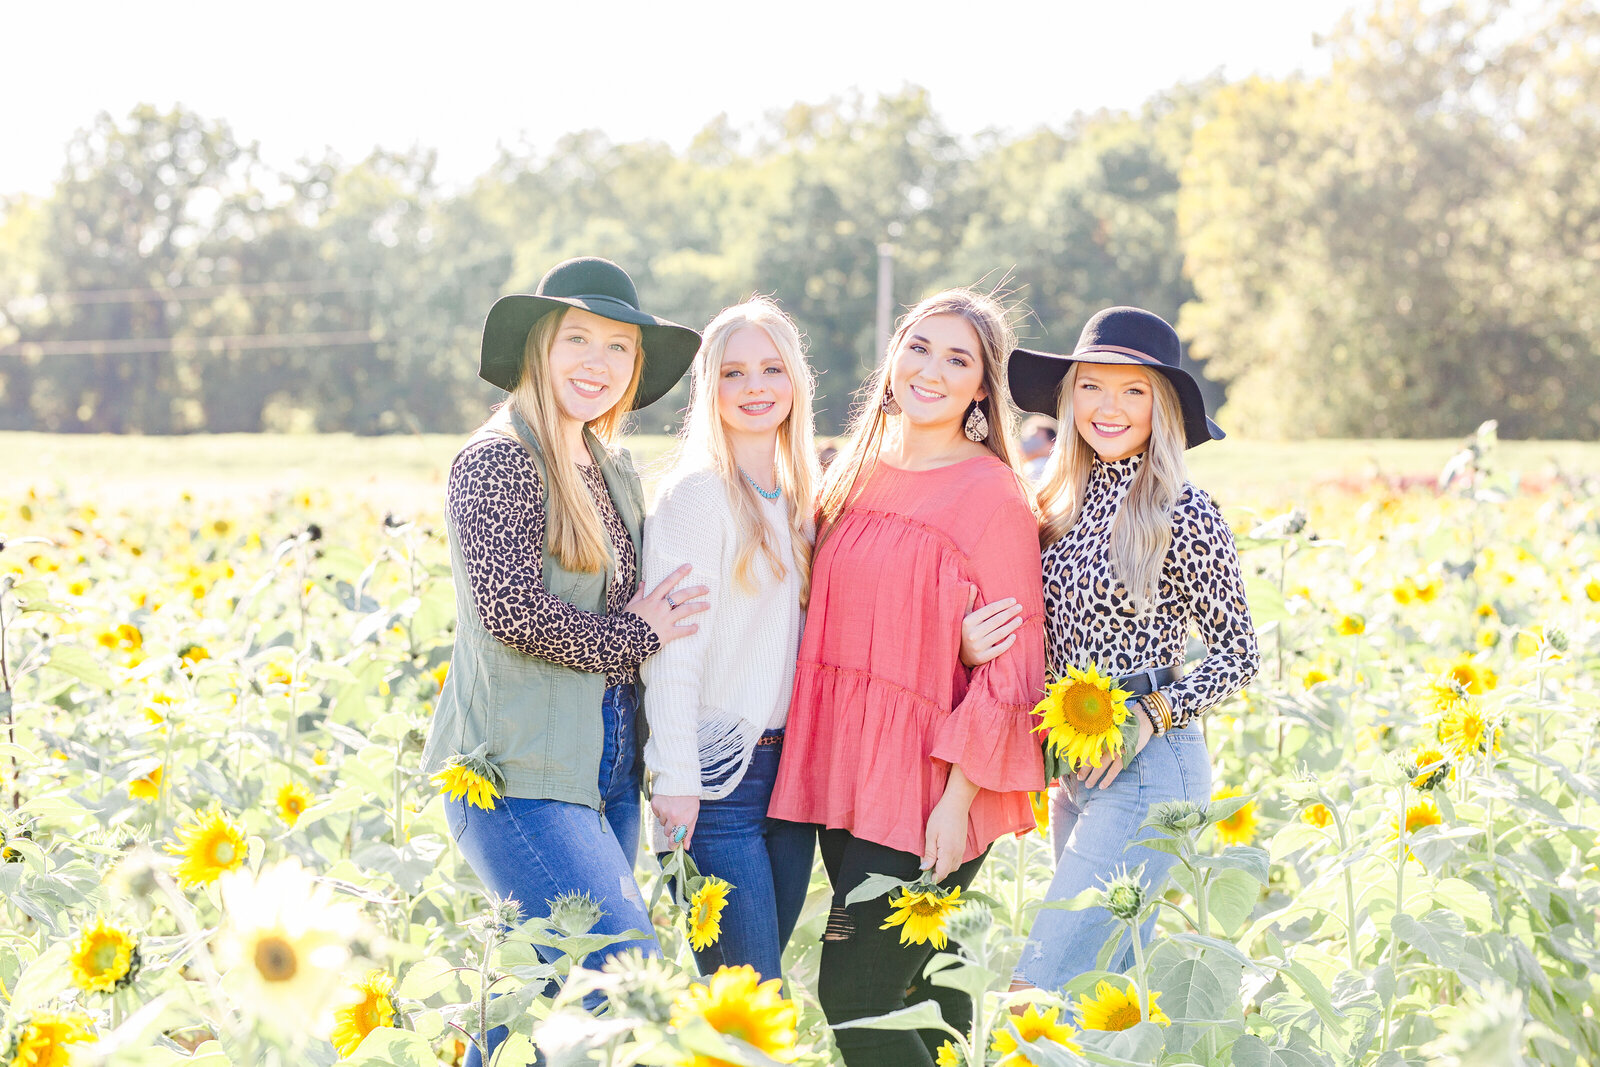 Arkansas Senior Spokesmodels in a Sunflower Field